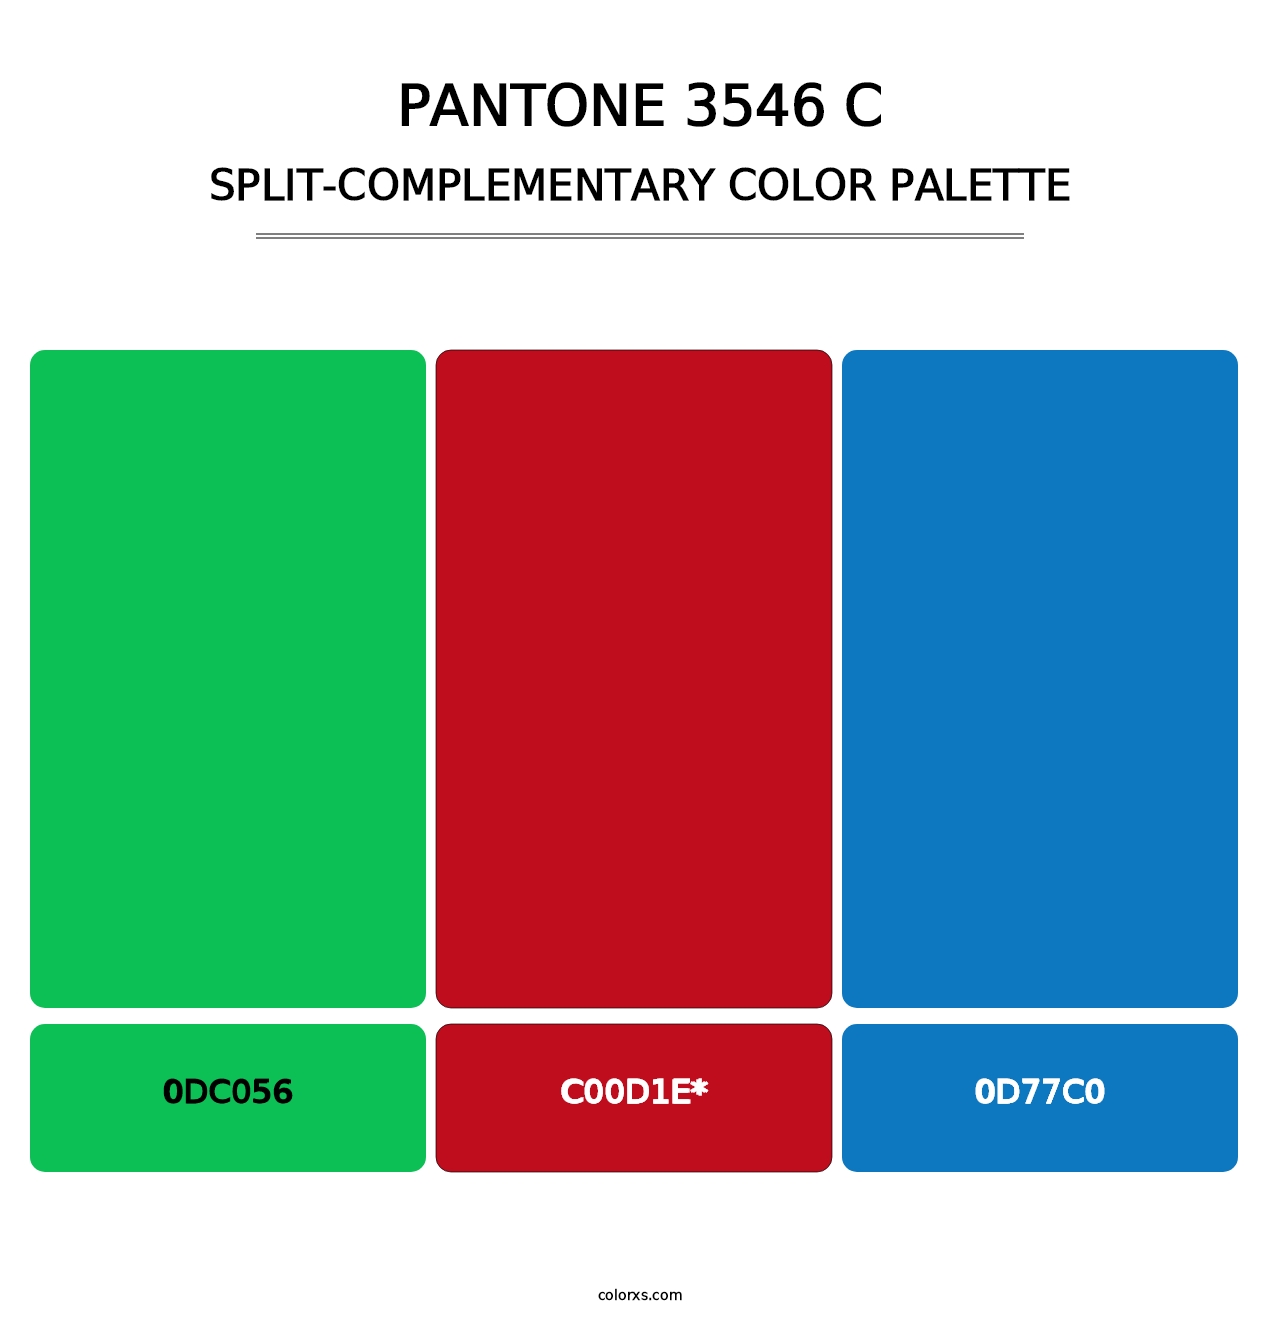 PANTONE 3546 C - Split-Complementary Color Palette